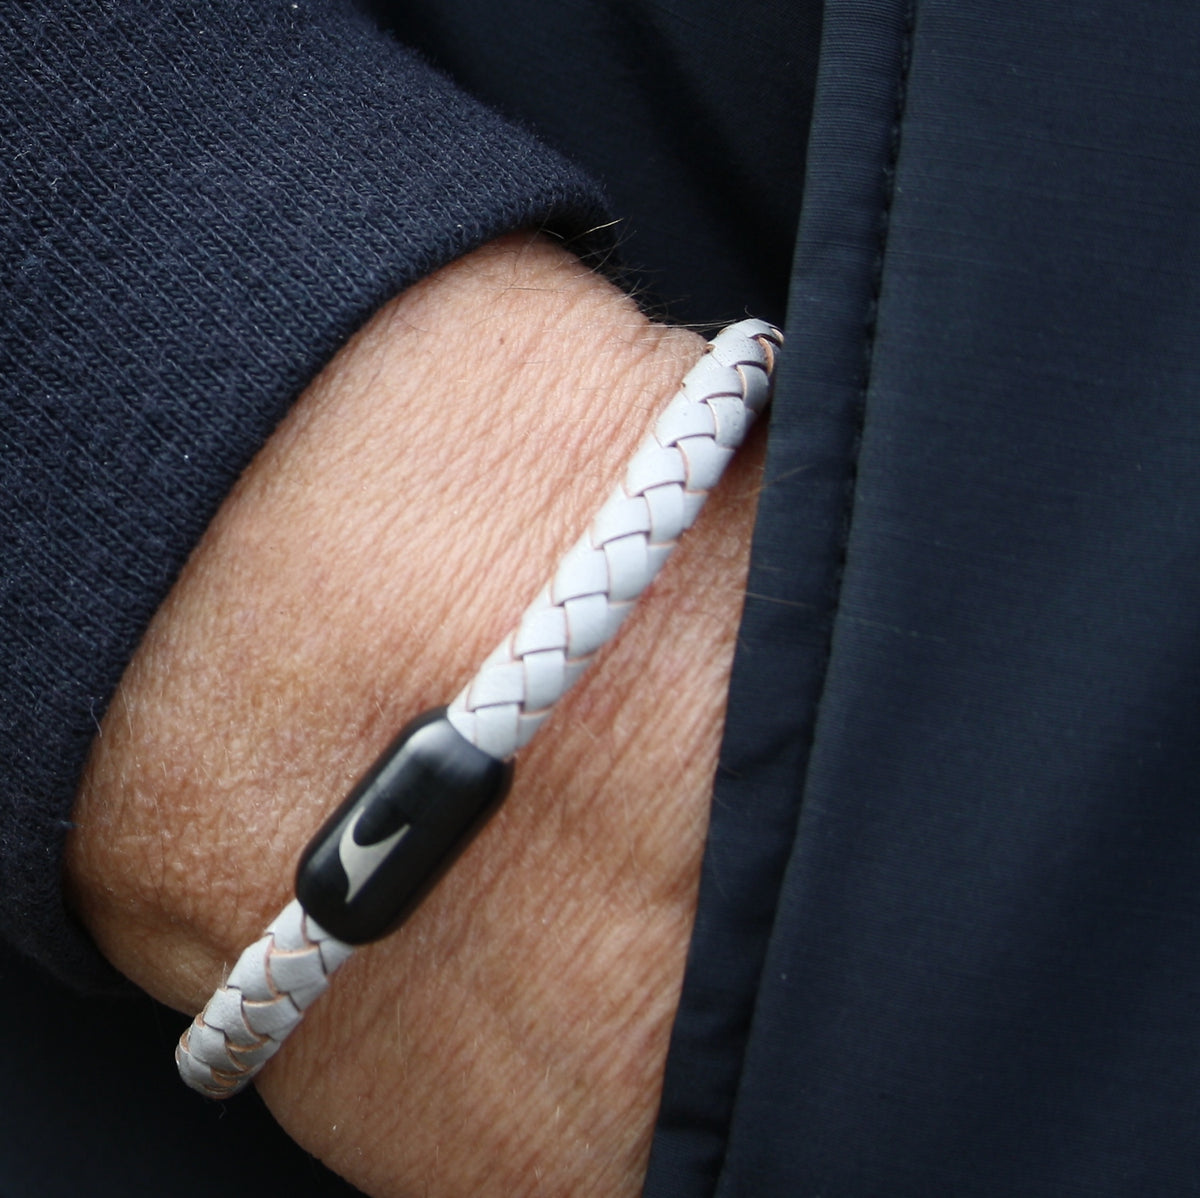 Herren-Leder-armband-steel-grau-schwarz-geflochten-Edelstahlverschluss-getragen-wavepirate-shop-f